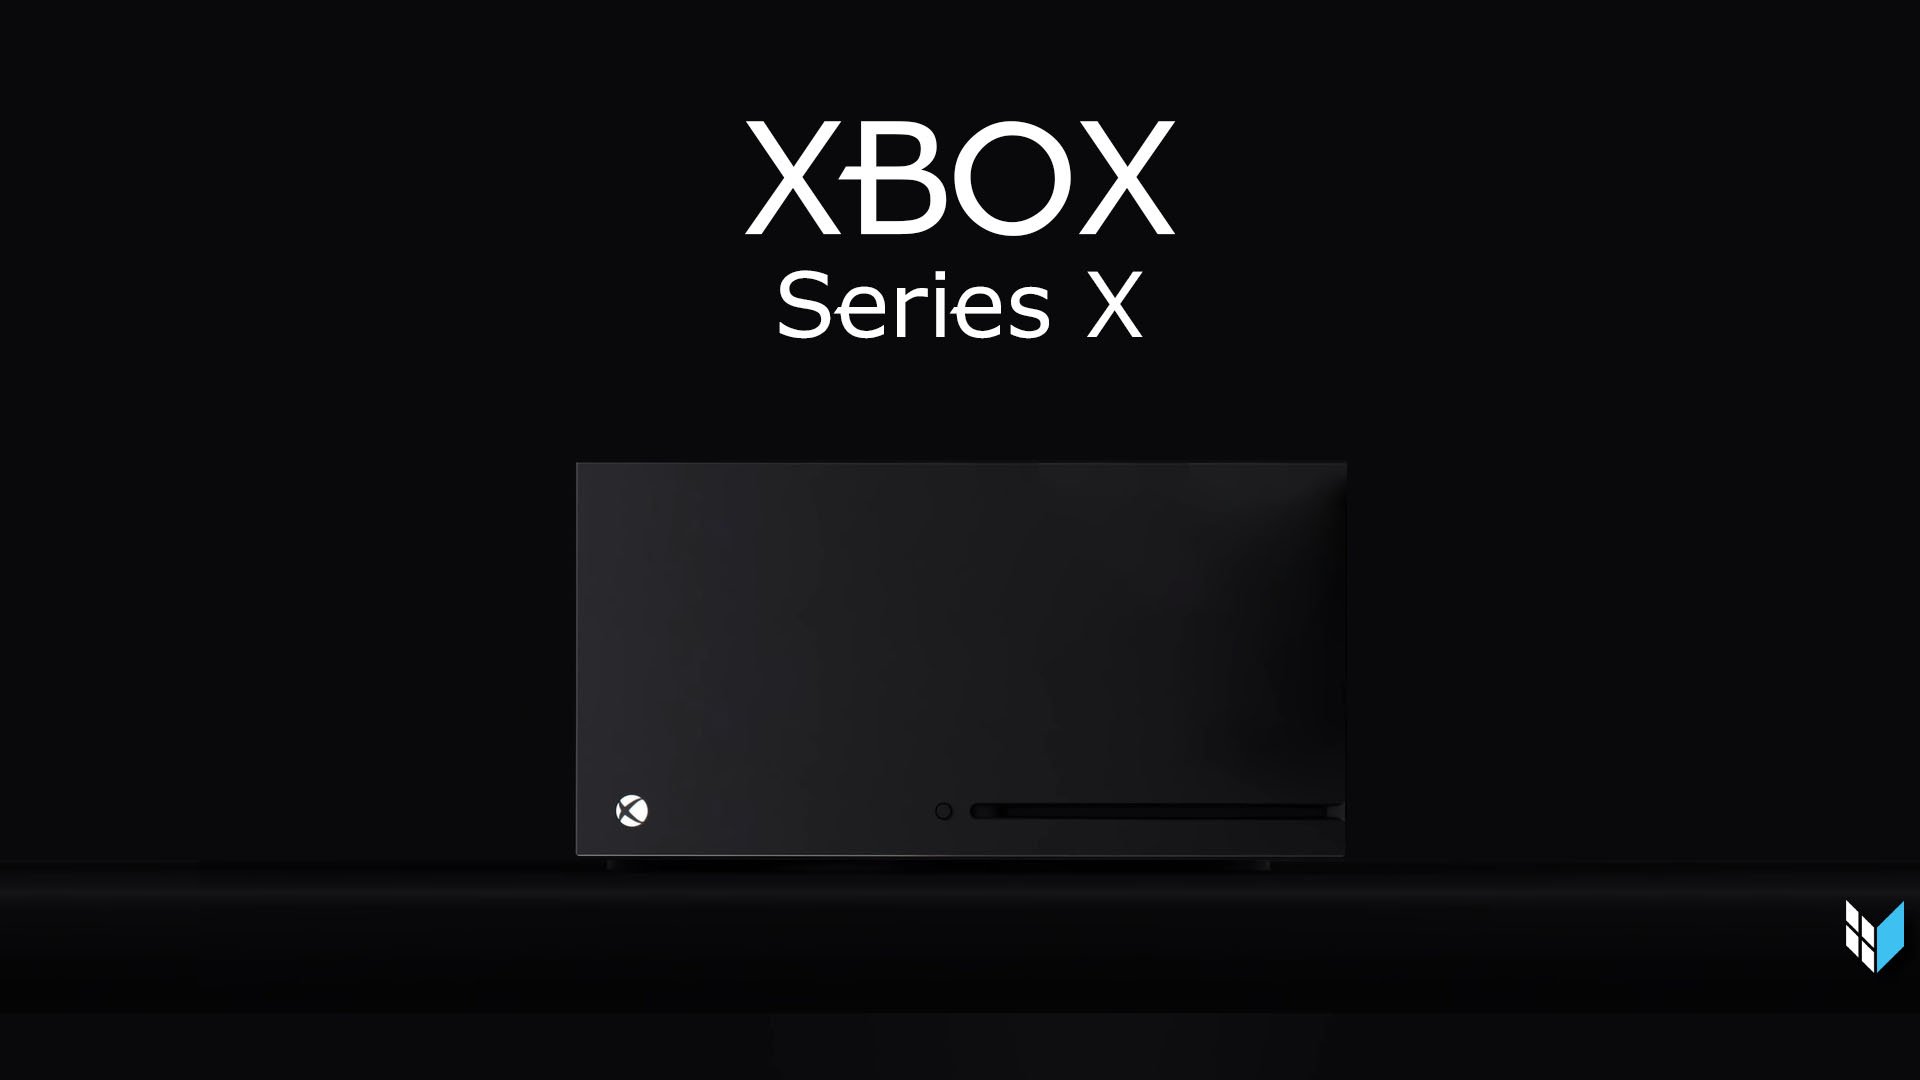 ไมโครซอฟท์ ยันยังไม่มีเกม exclusive Xbox Series X ทุกเกมจะเล่นกับ Xbox one ได้ ในปีสองปีนี้